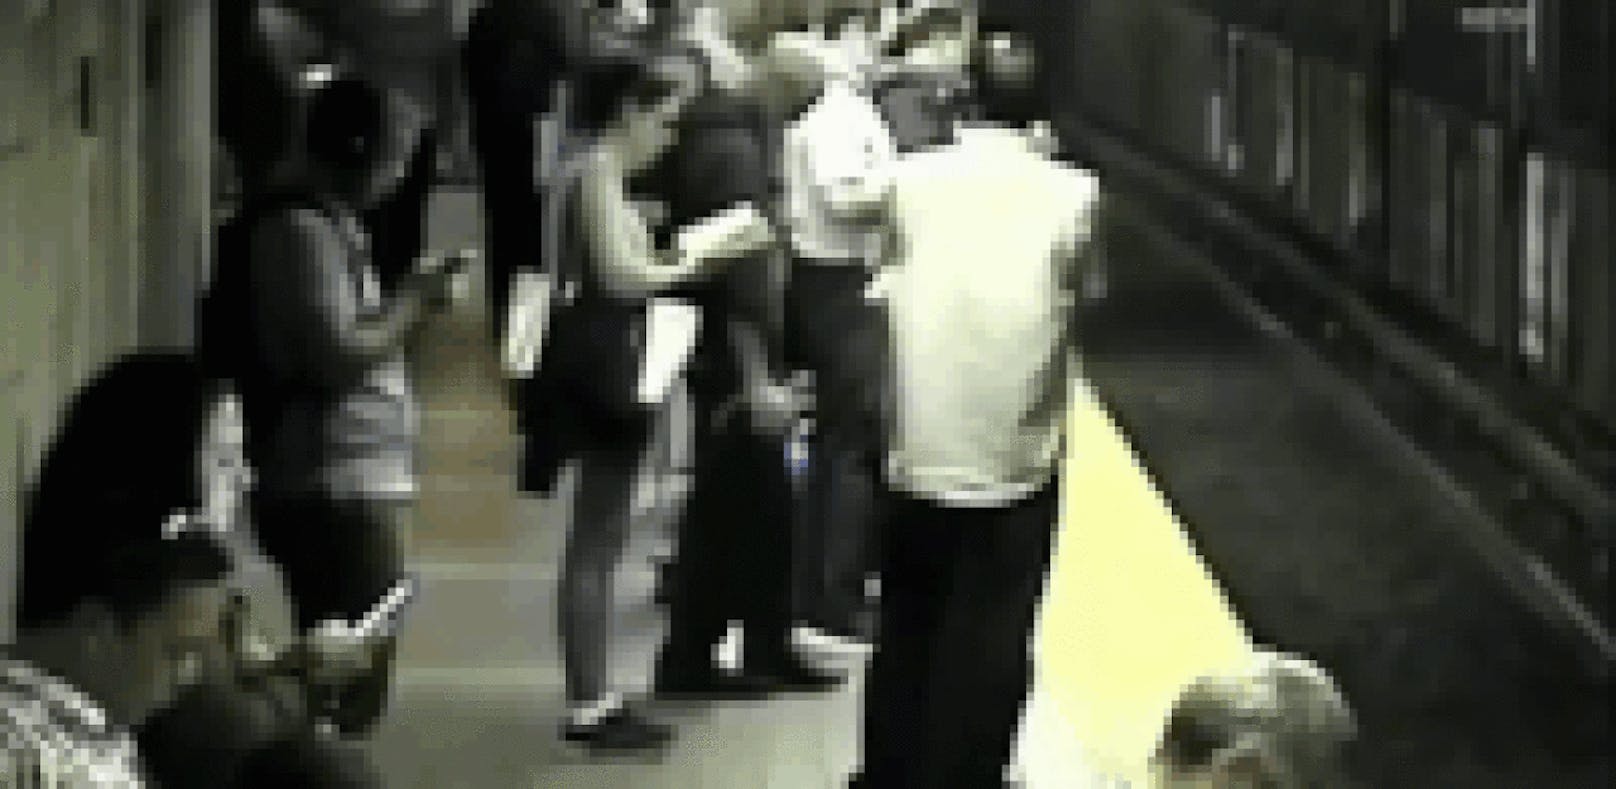 Gerettet: Ohnmächtige fiel auf U-Bahn-Gleise